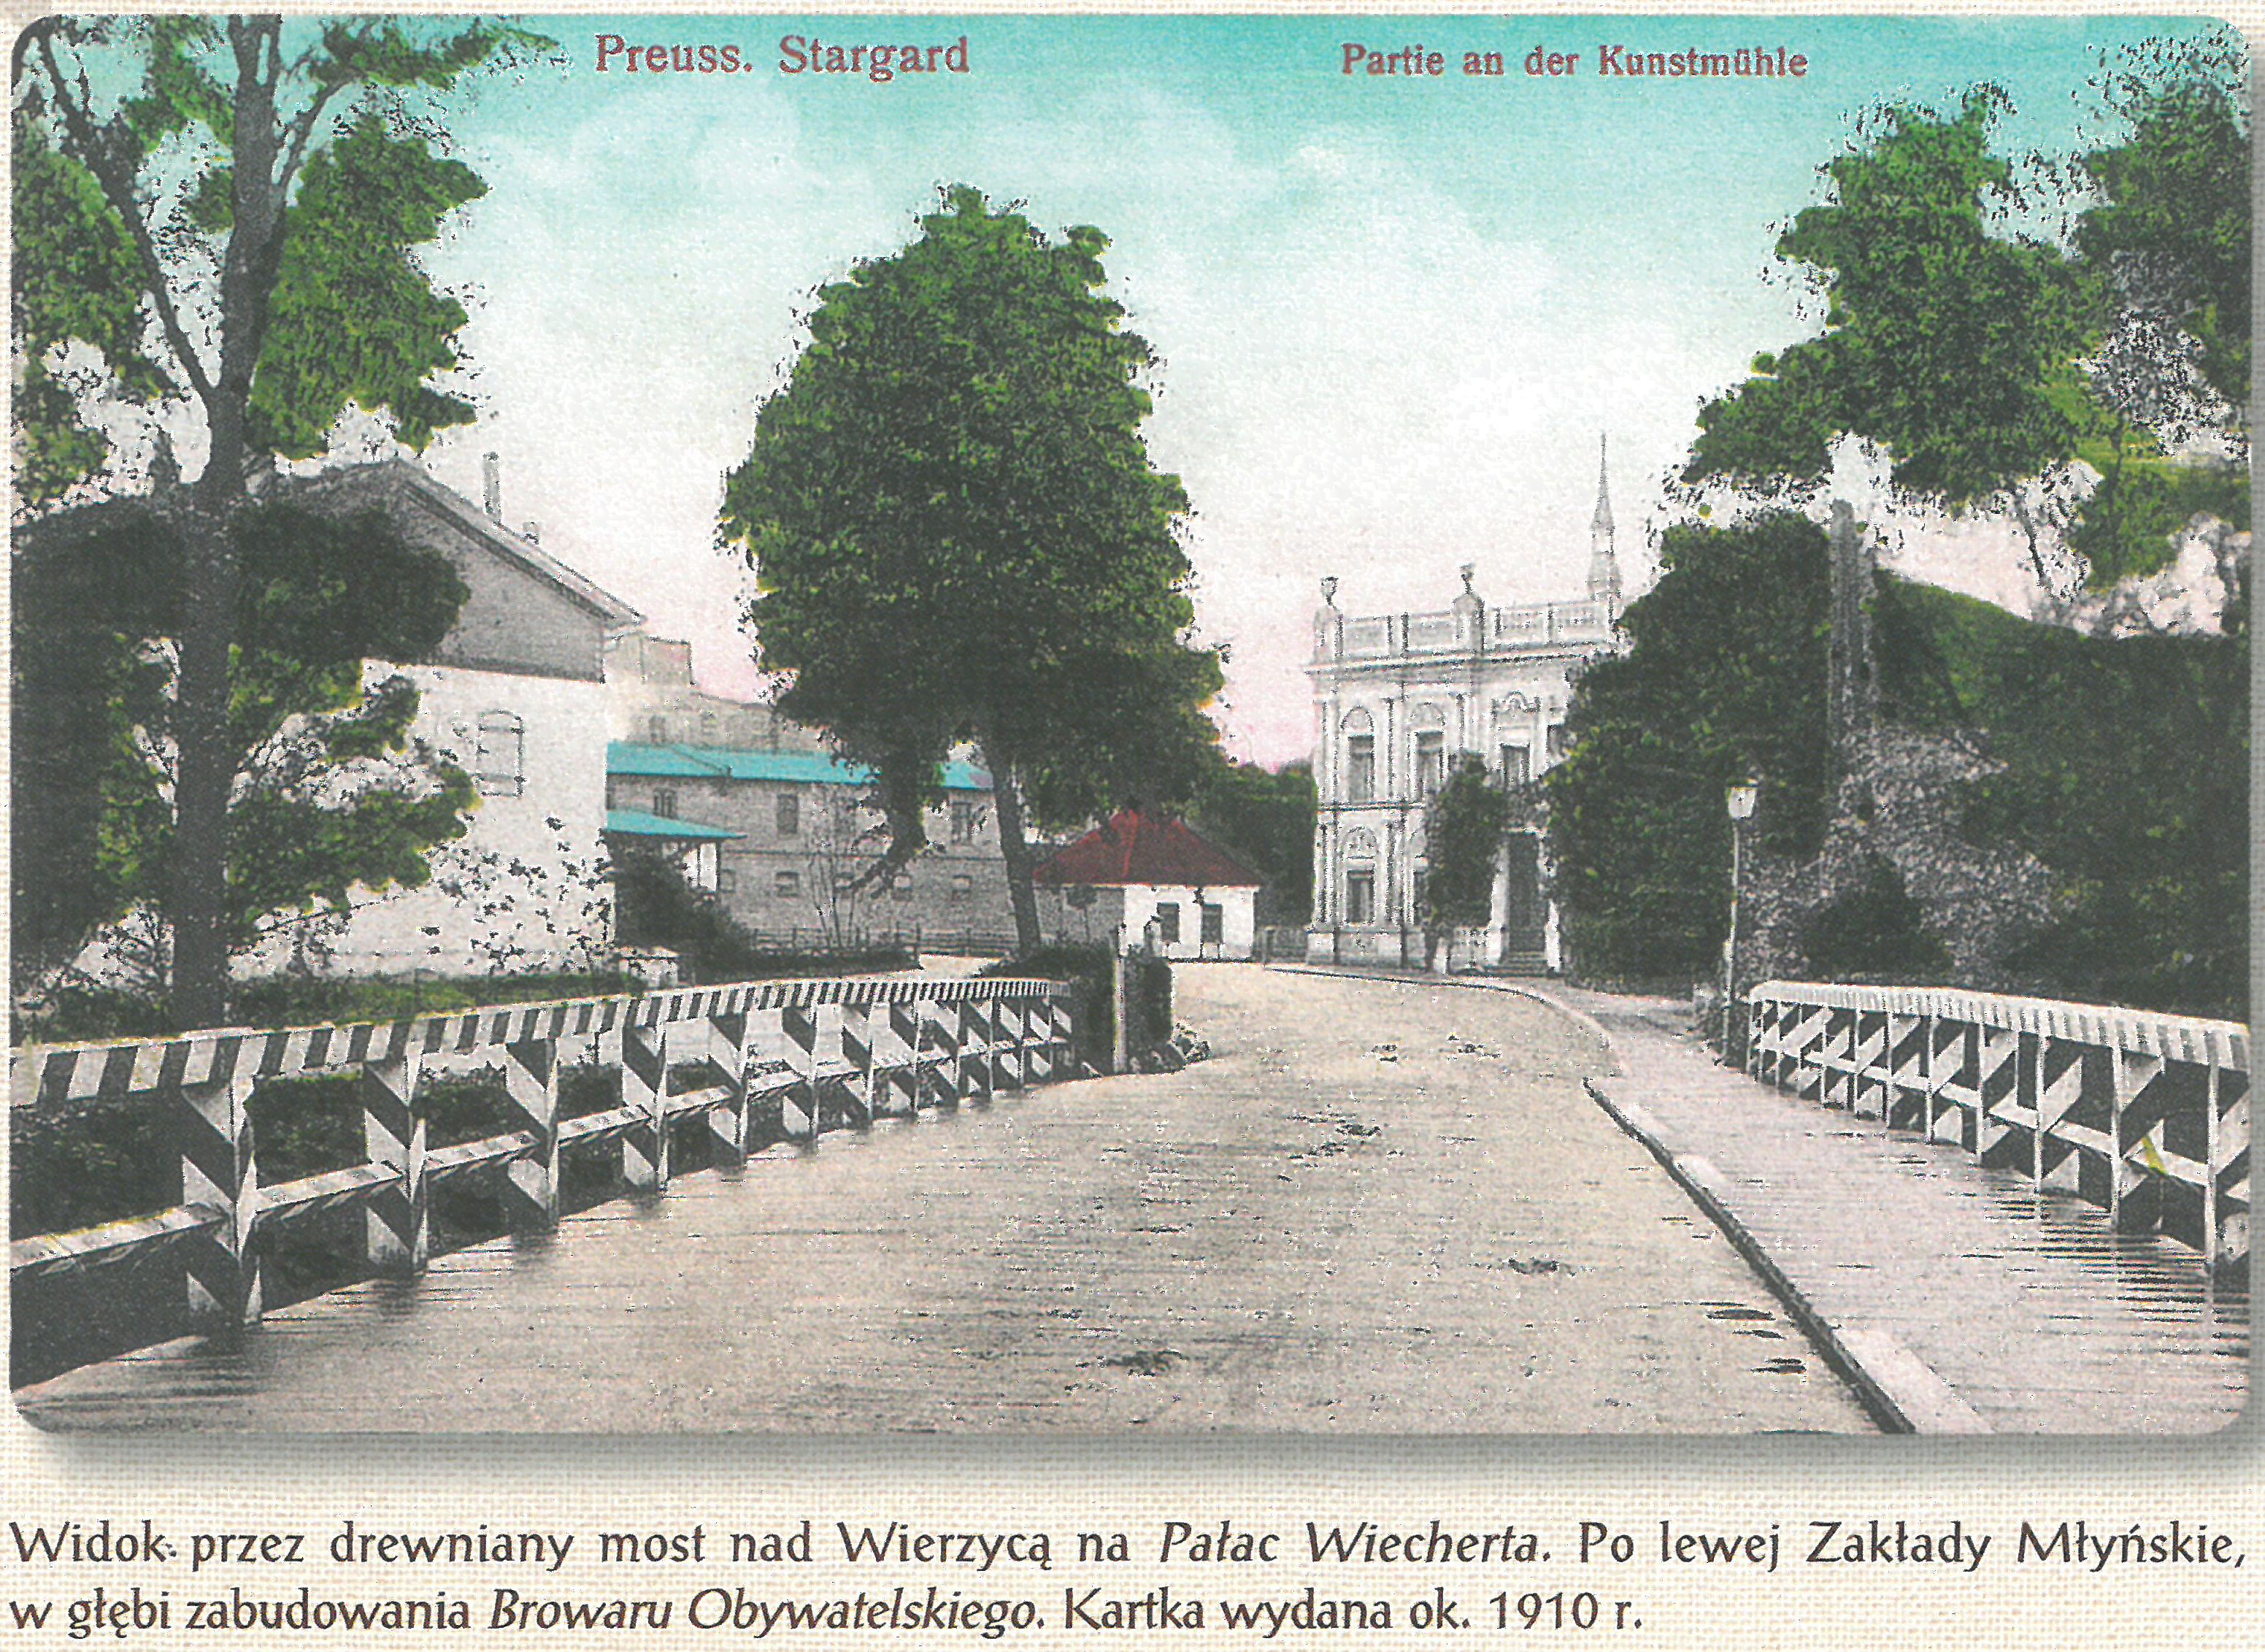 Widok przez drewniany most na Pałac Wiecherta. 1910r